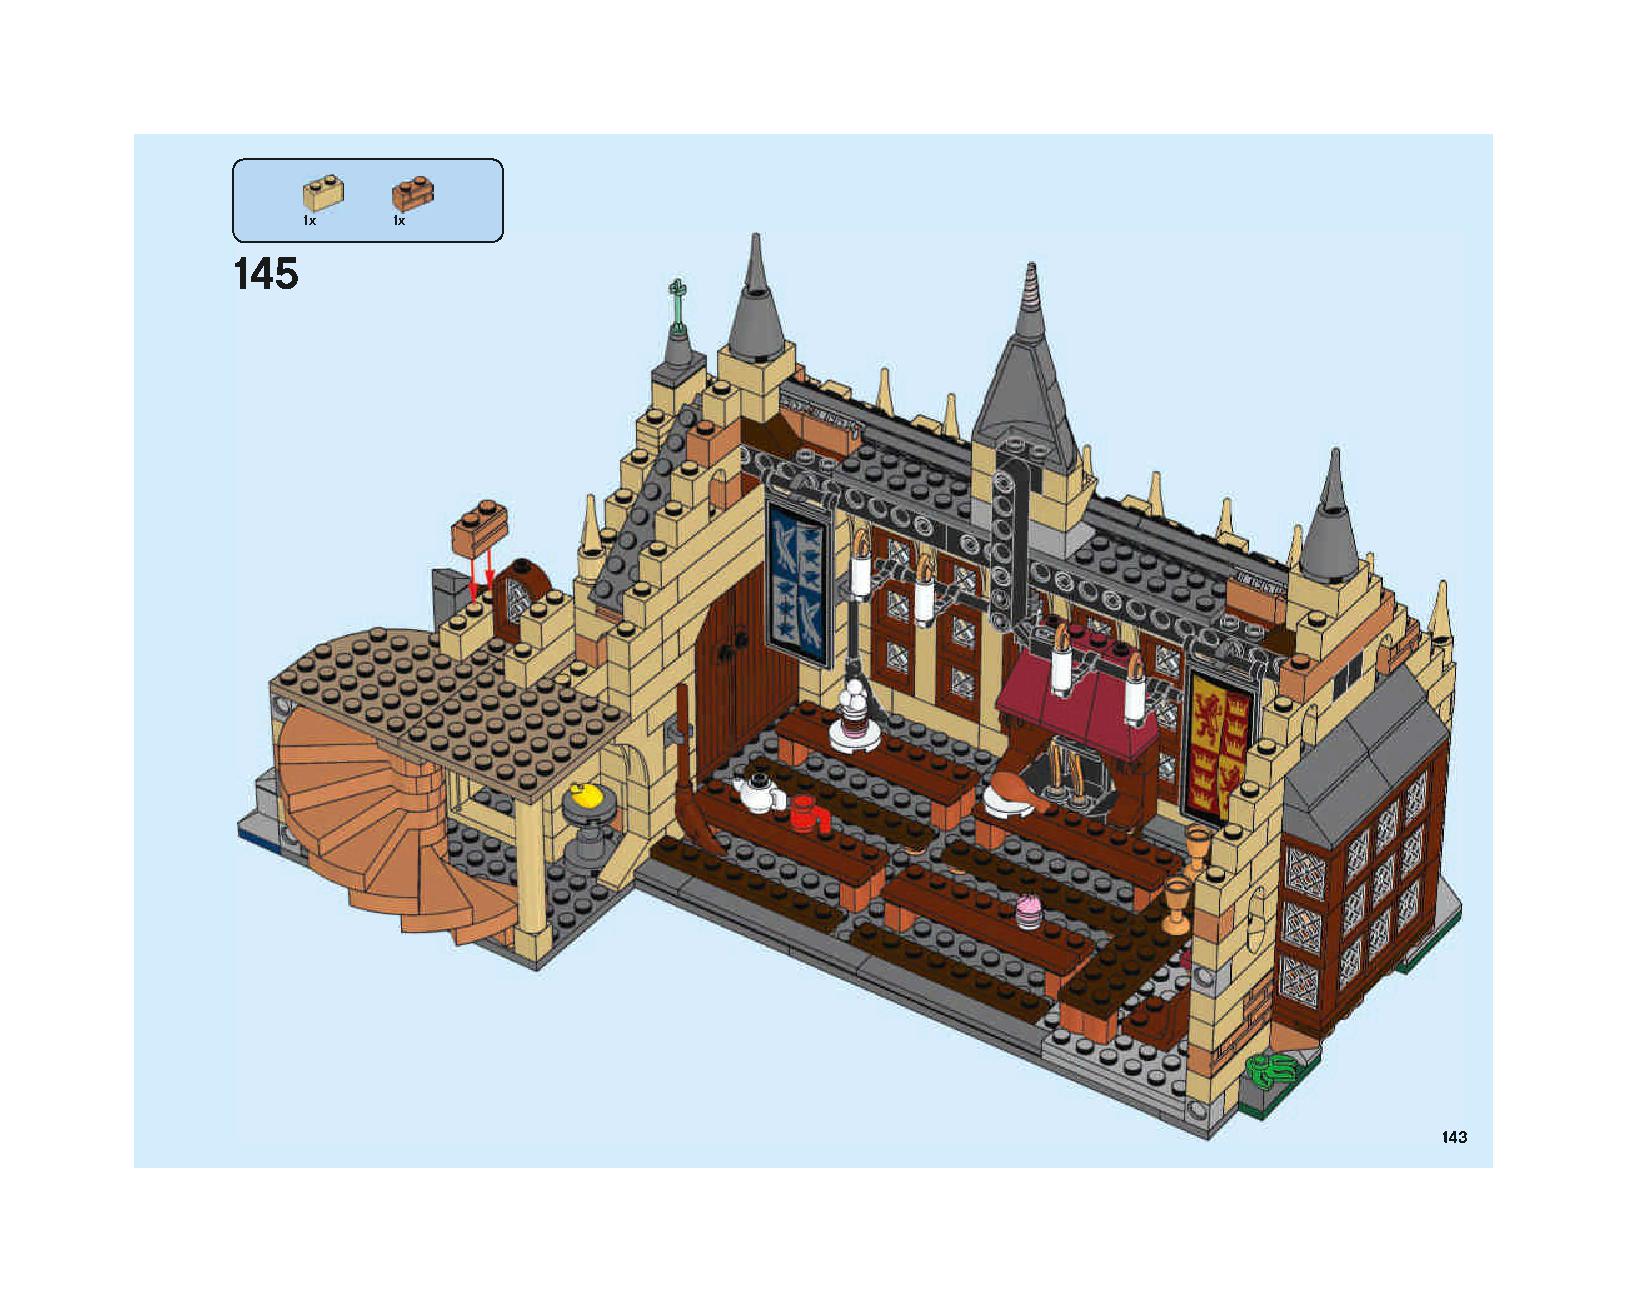 ホグワーツの大広間 75954 レゴの商品情報 レゴの説明書・組立方法 143 page